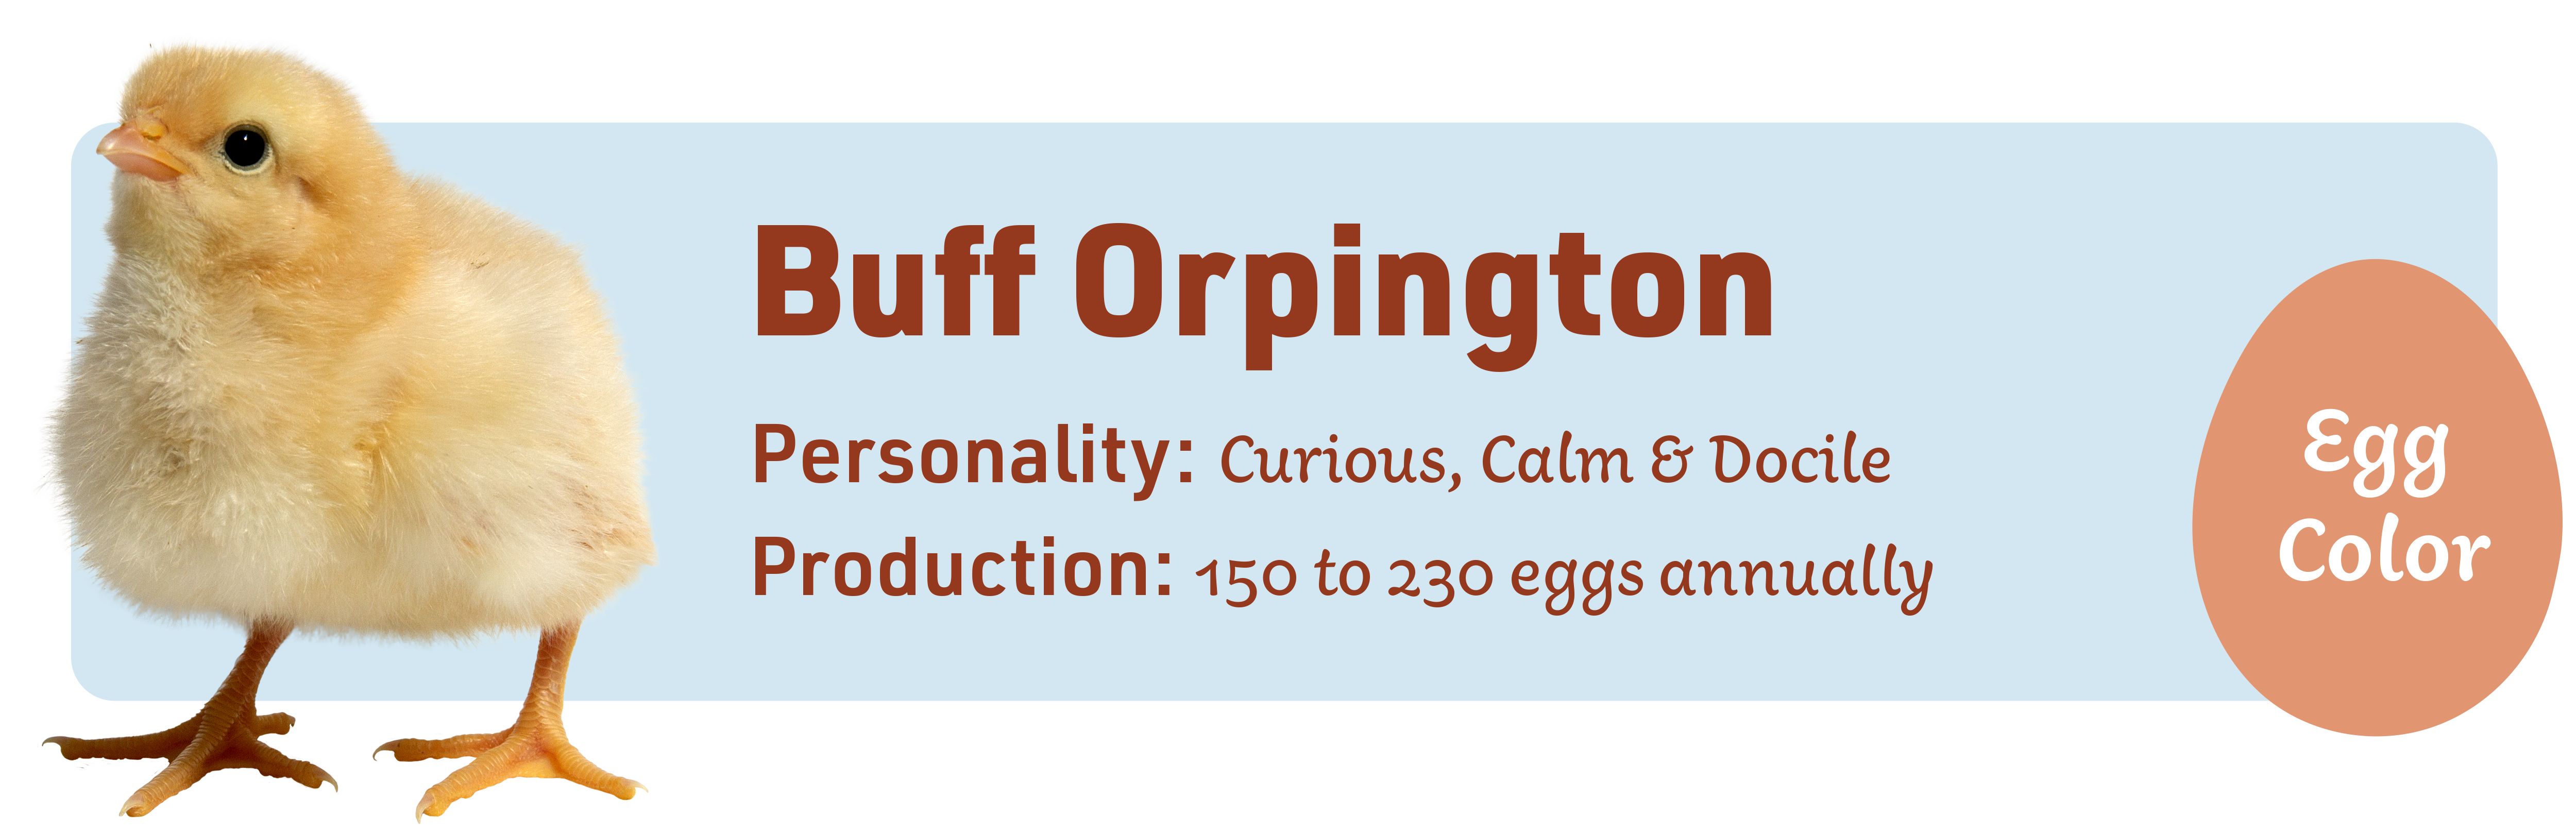 Buff Orpington_Popular_chicks_v1-1